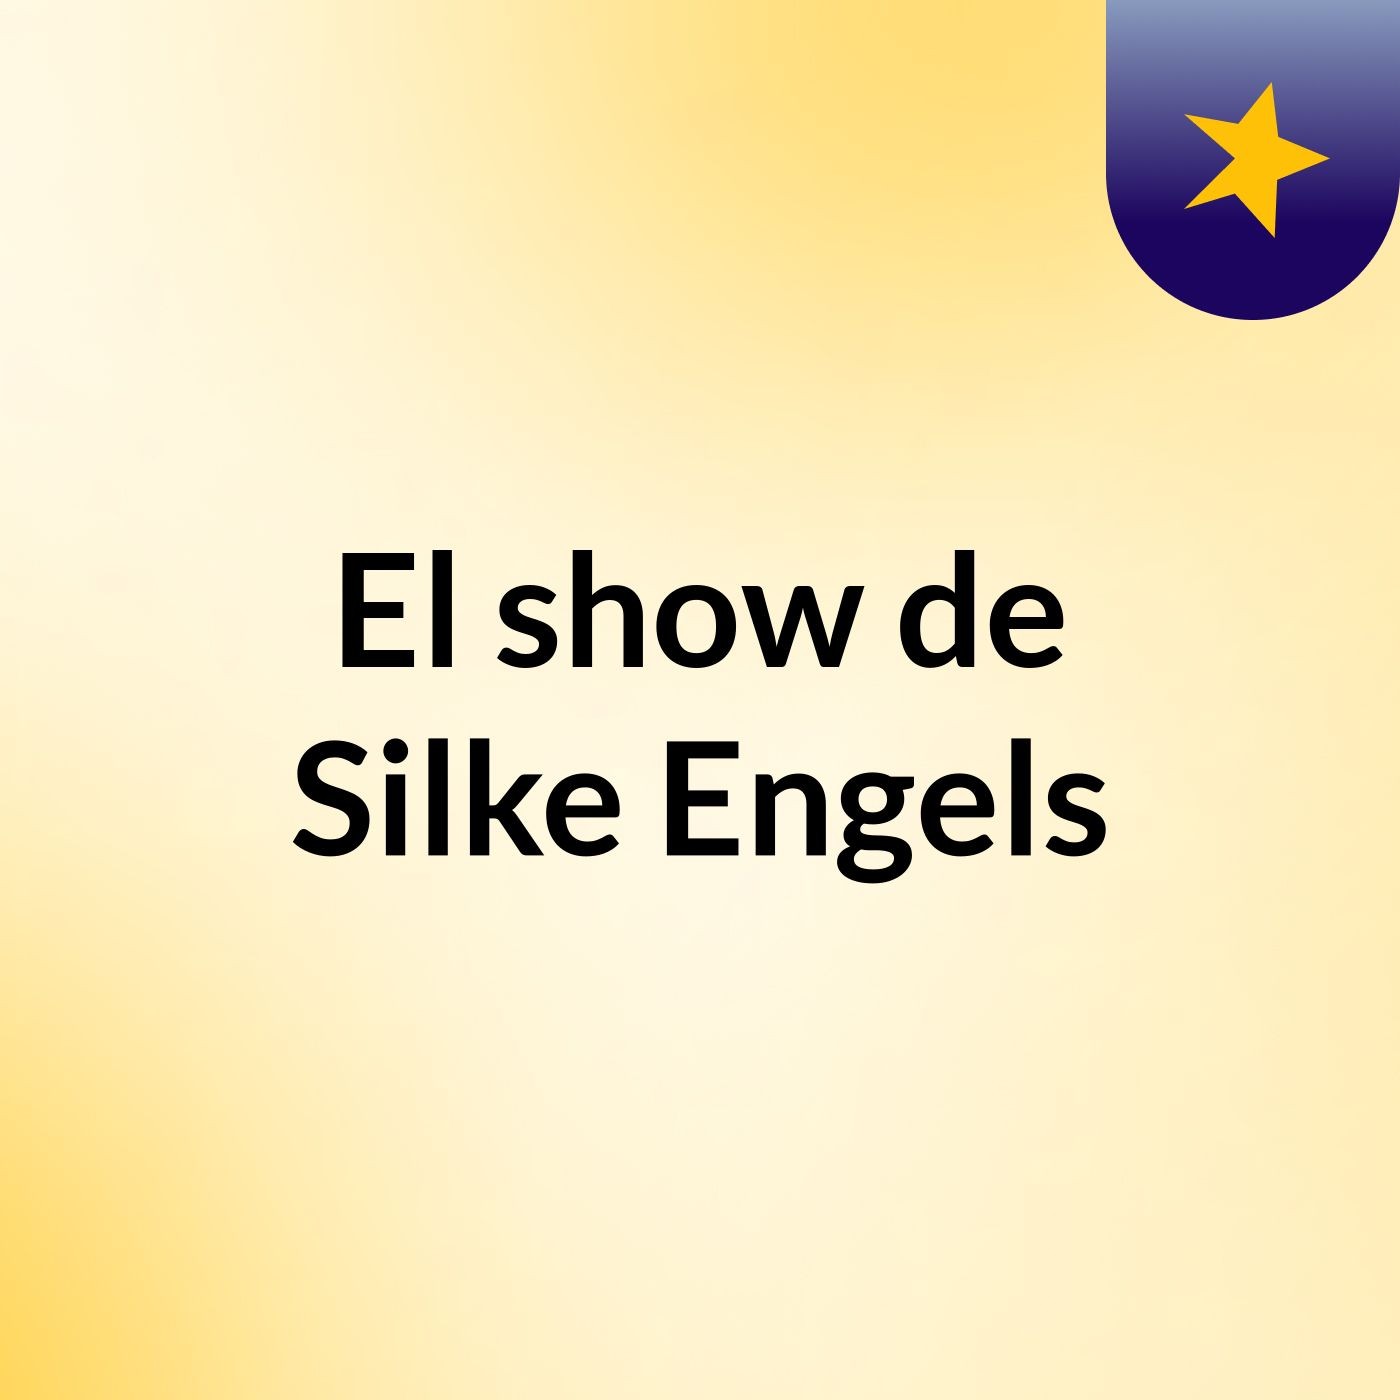 El show de Silke Engels